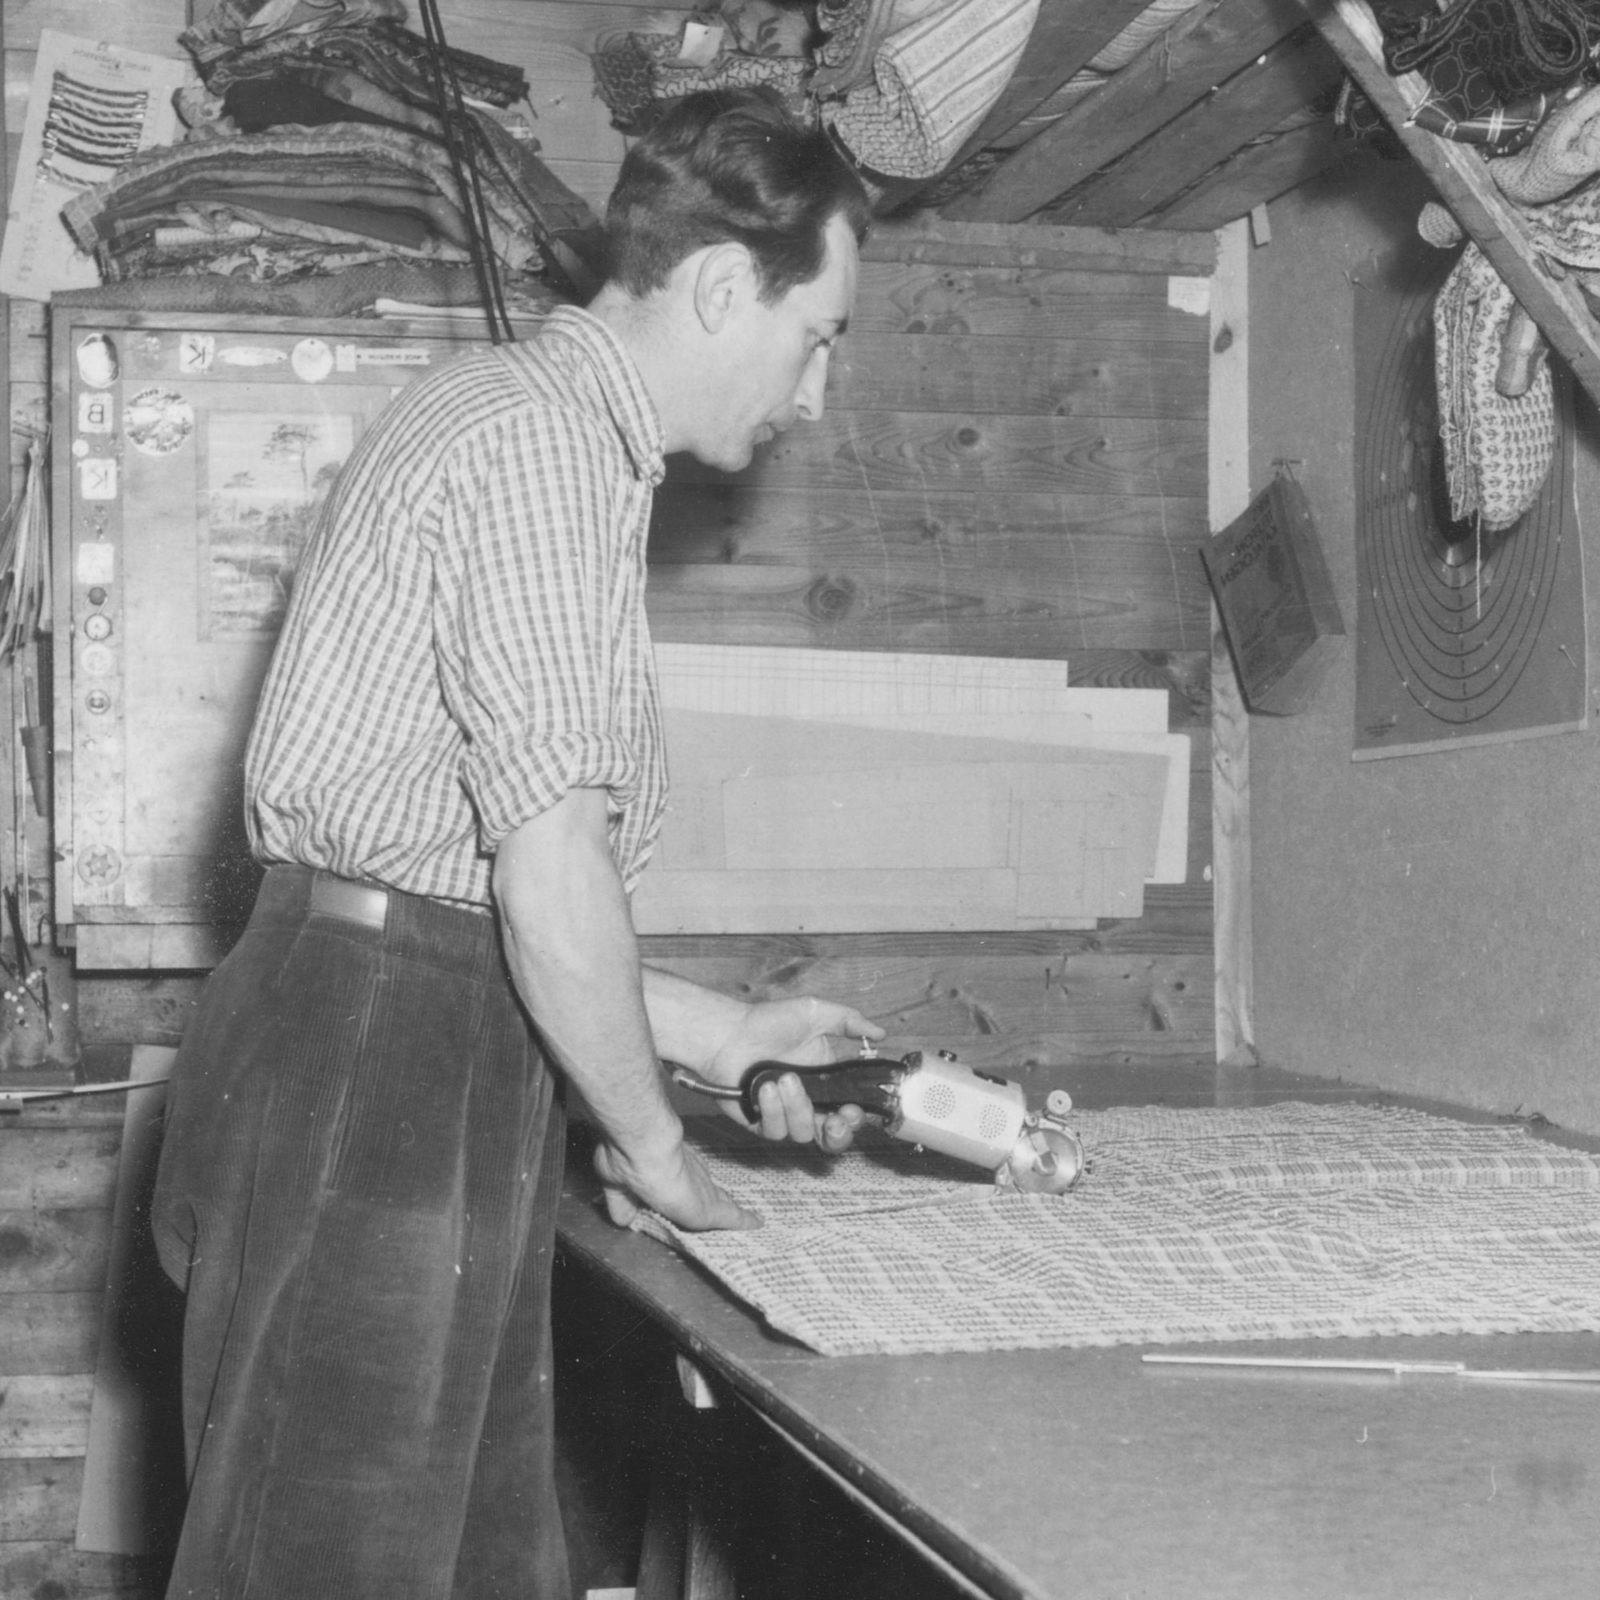 Mann beim Zuschneiden von Stoffen mit Textilschneider, 1940er.